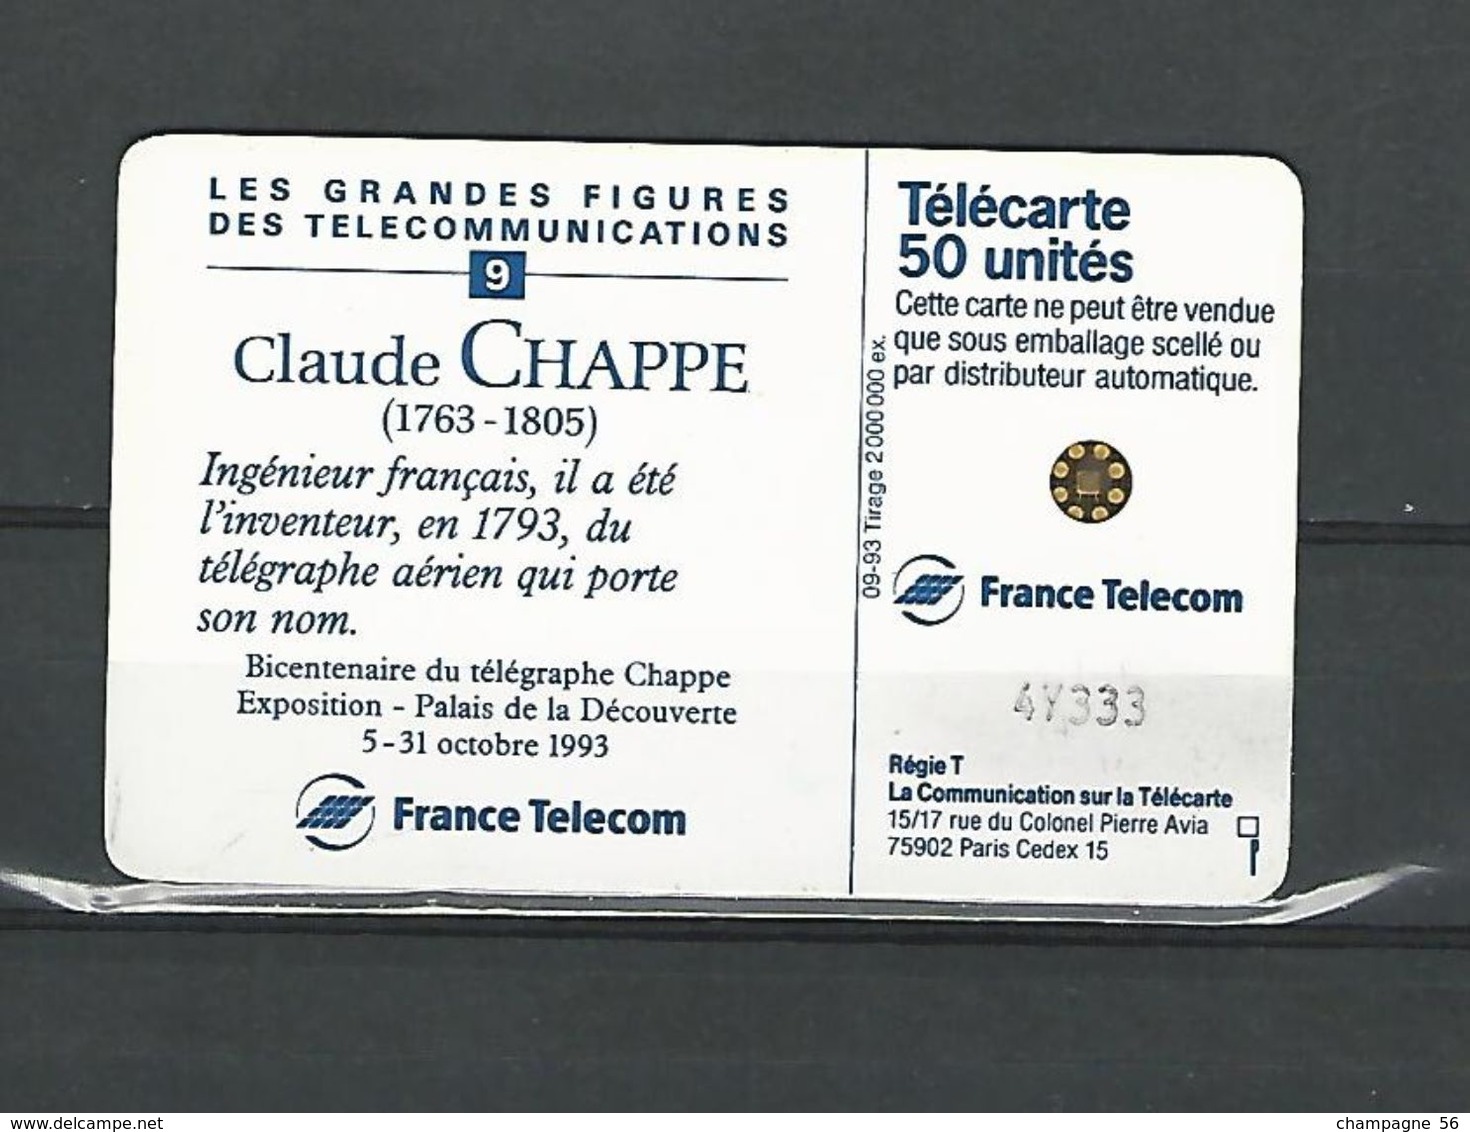 VARIÉTÉS FRANCE TÉLÉCARTE 1993 F438  ?   SC5   09 / 93  CLAUDE CHAPPE  50 UNITÉ  UTILISÉE - Fehldrucke